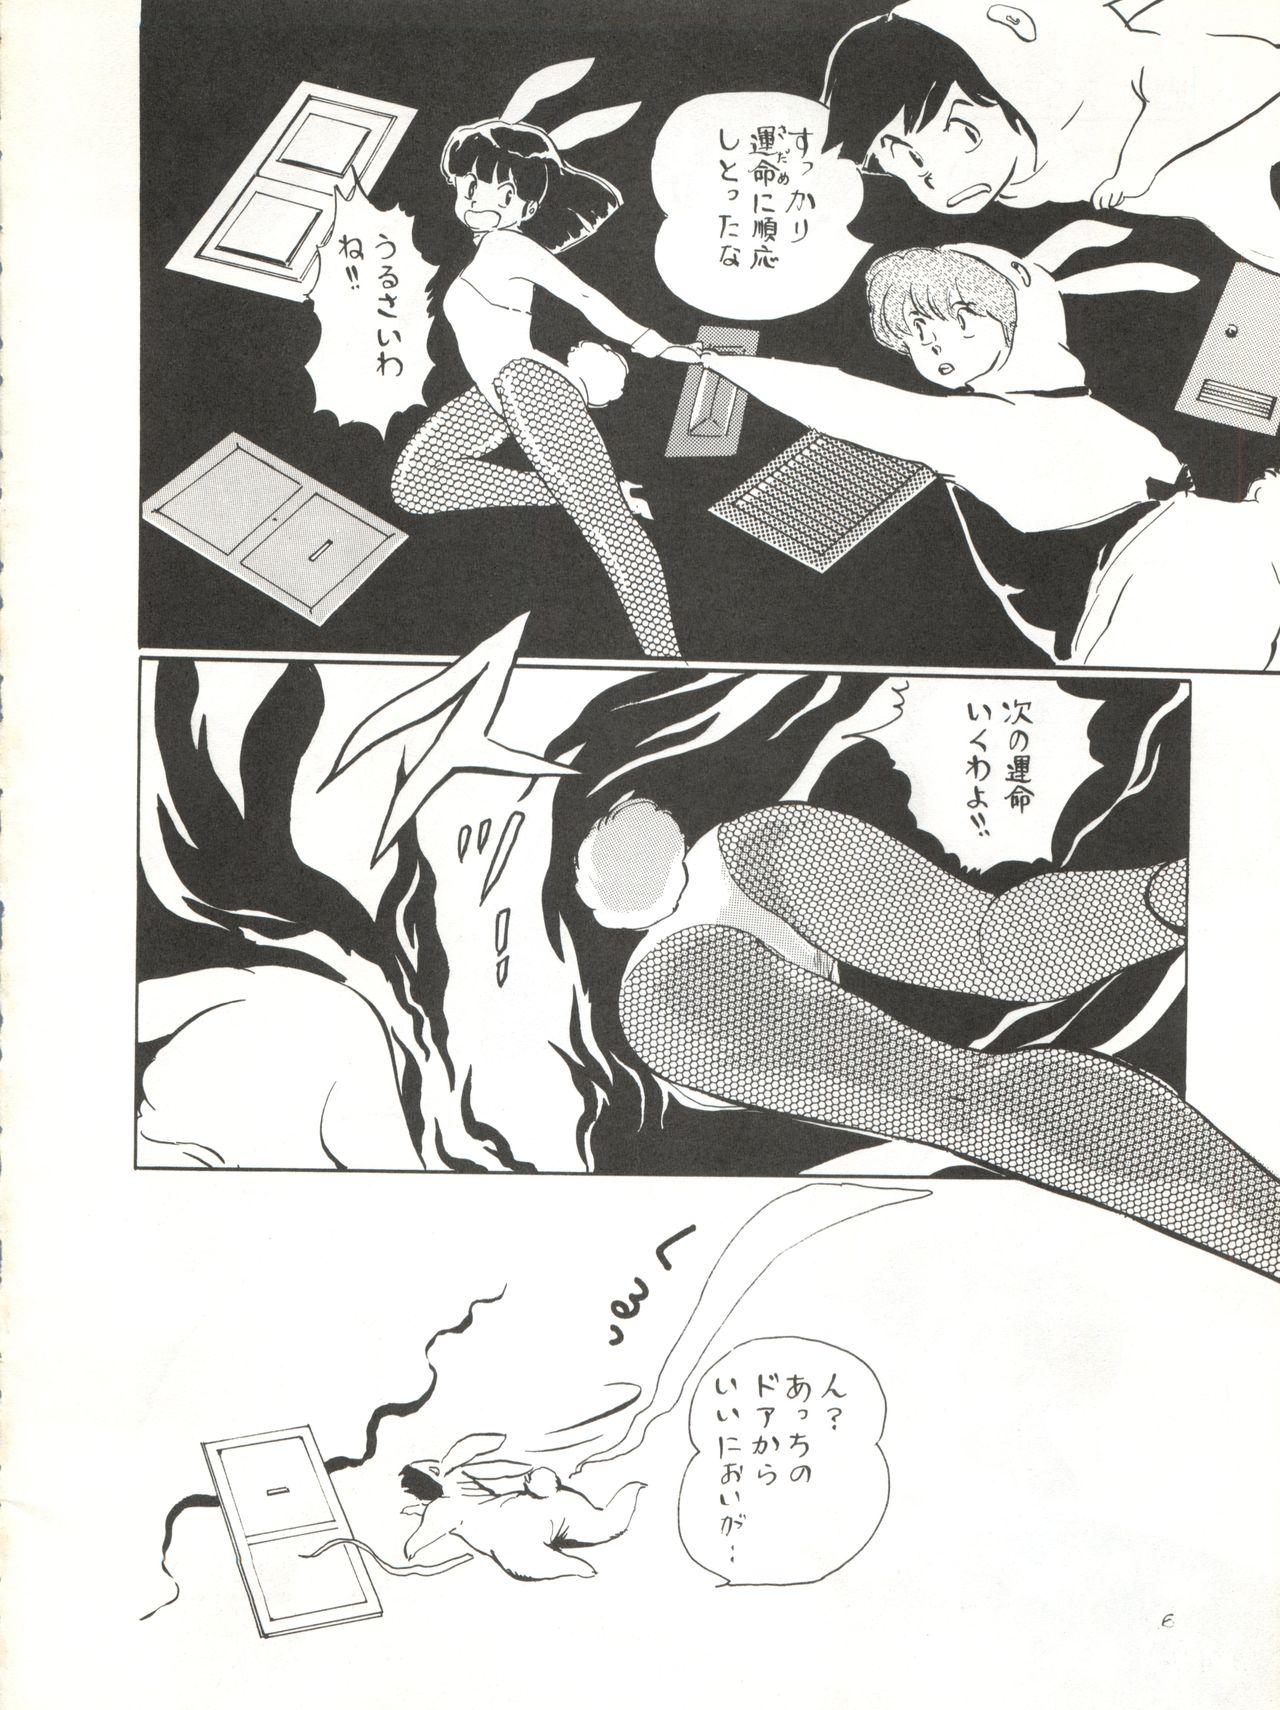 Bunduda Natsu no Arashi - Urusei yatsura Class Room - Page 6